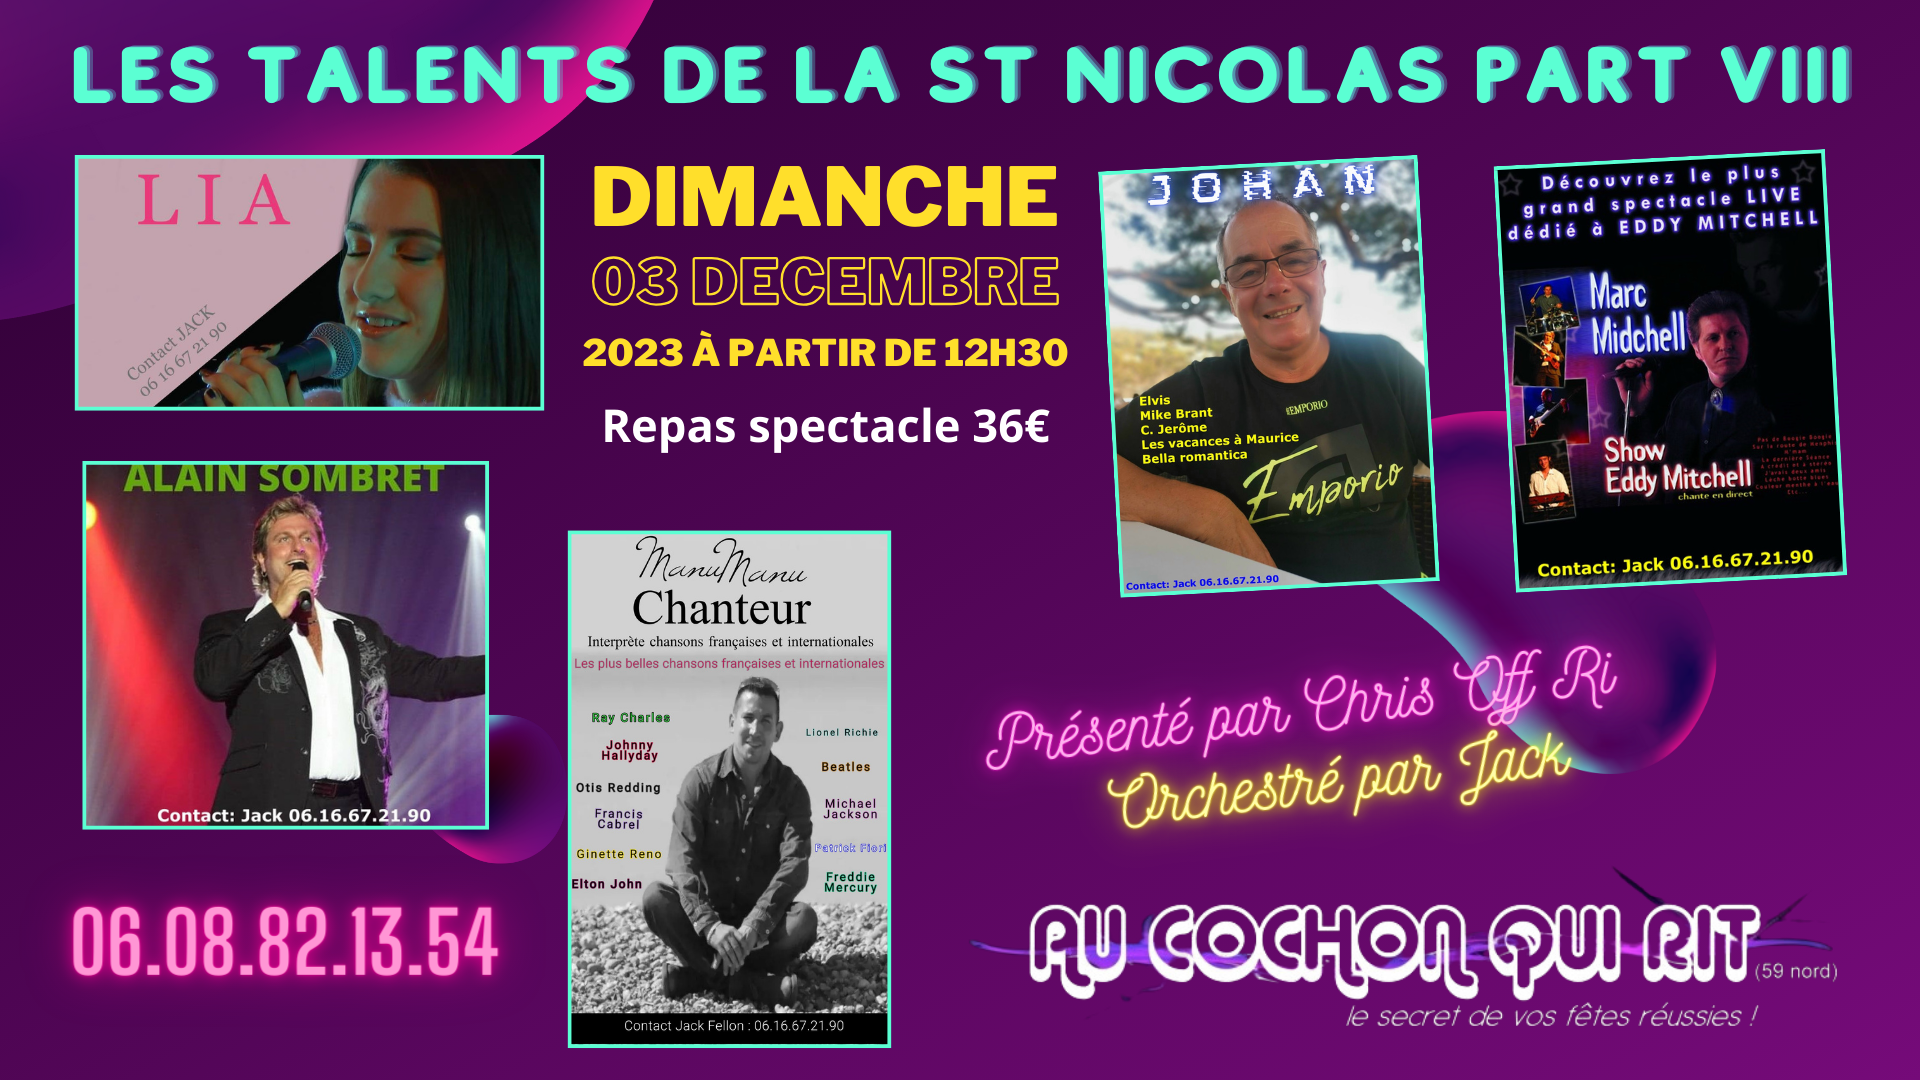 Les talents de la St Nicolas PART VIII / Dimanche 03 décembre 2023 / cliquez ici pour plus d’info.